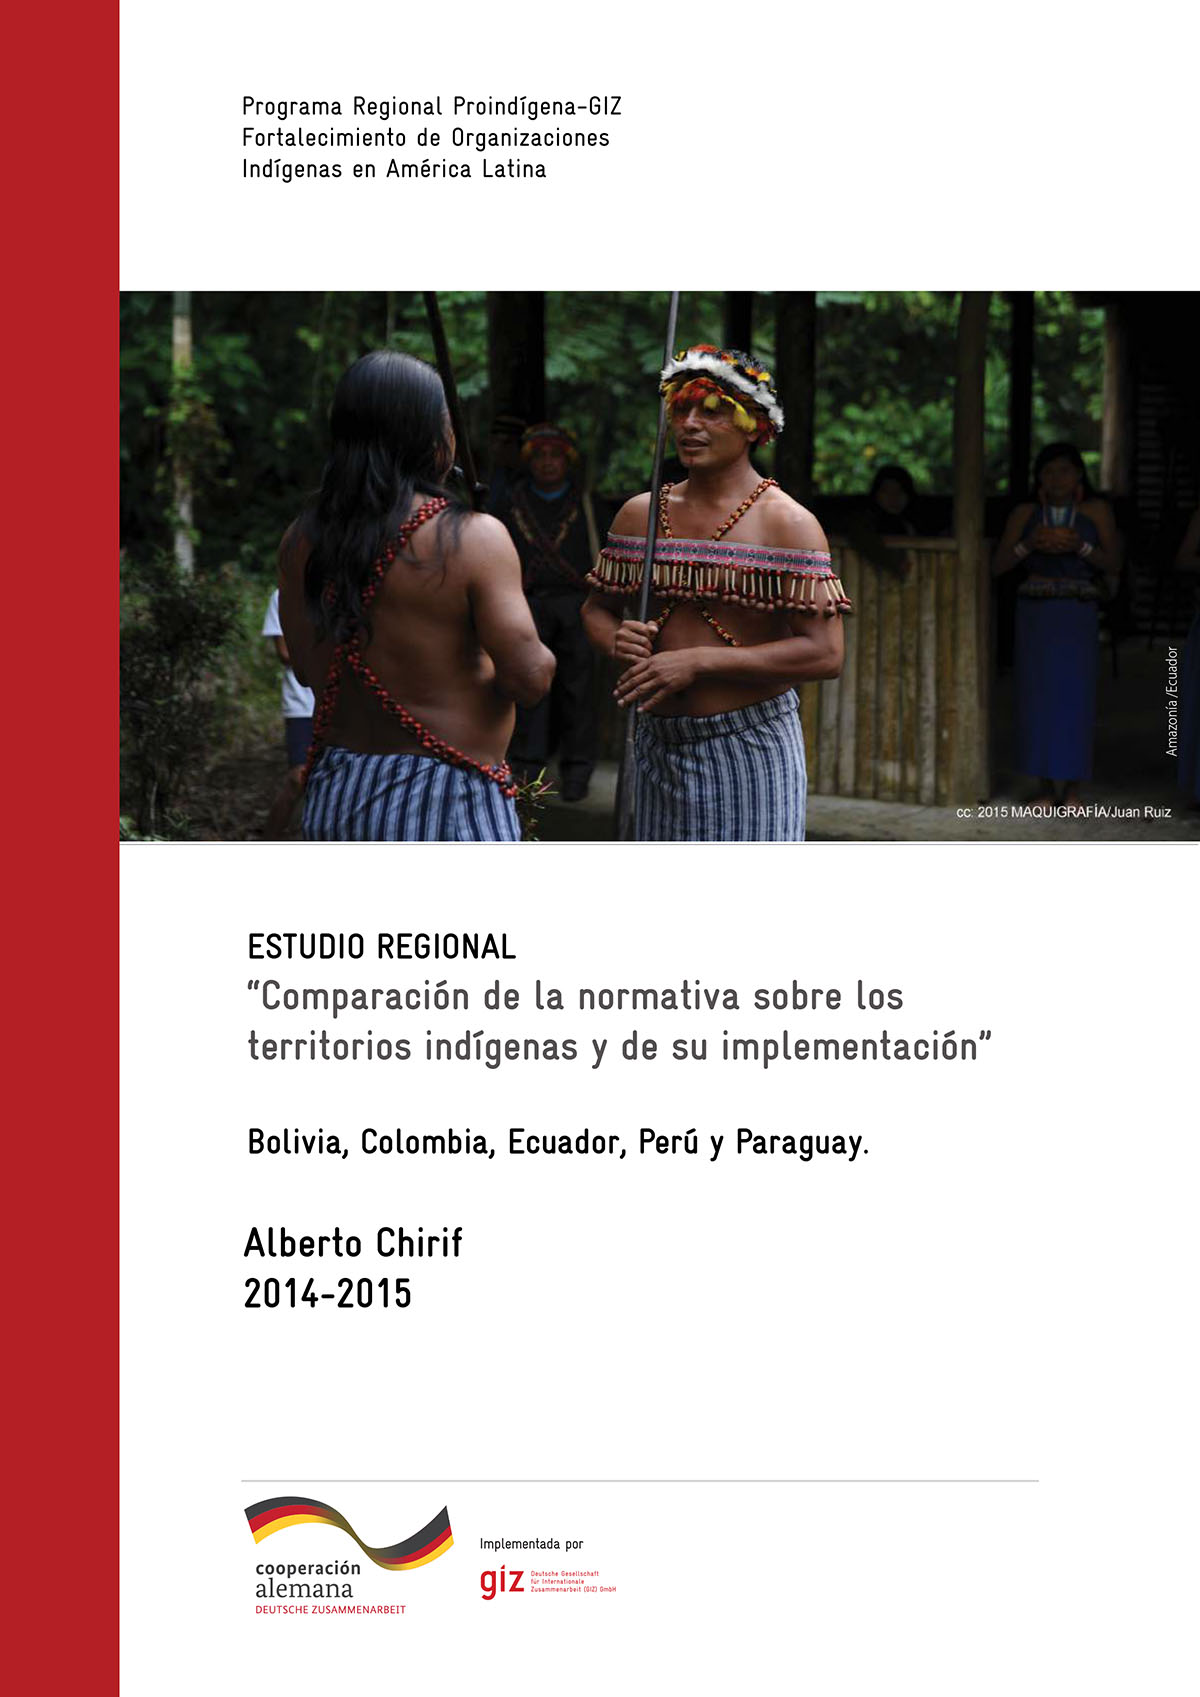 Estudio regional. Comparación de la normativa sobre los territorios indígenas y de su implementación